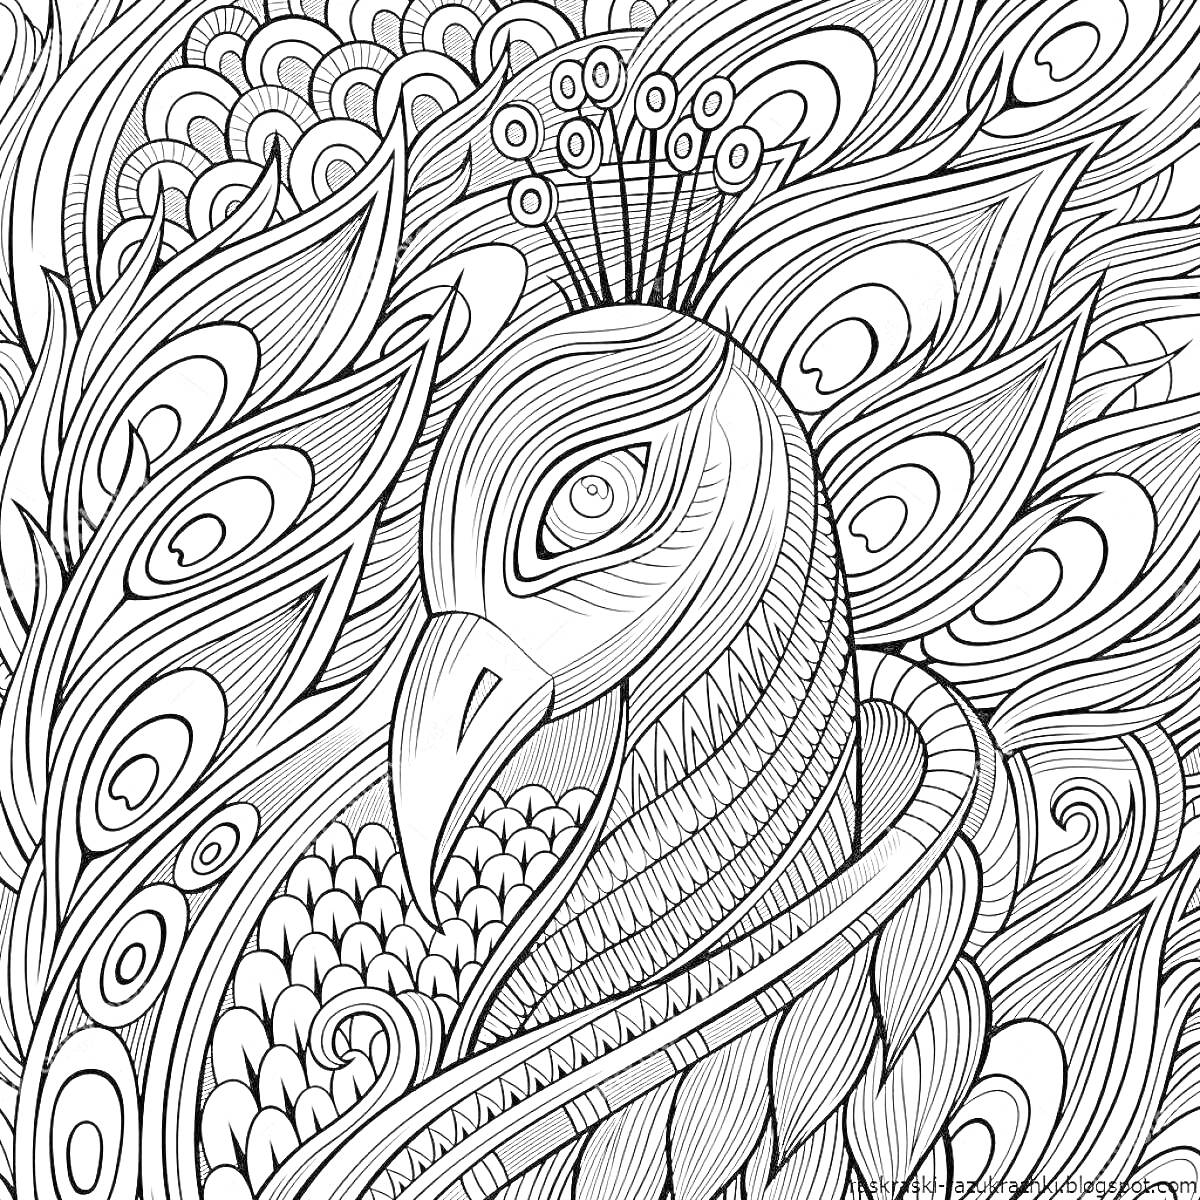 Раскраска антистресс раскраска павлин с узорами из перьев и геометрических элементов